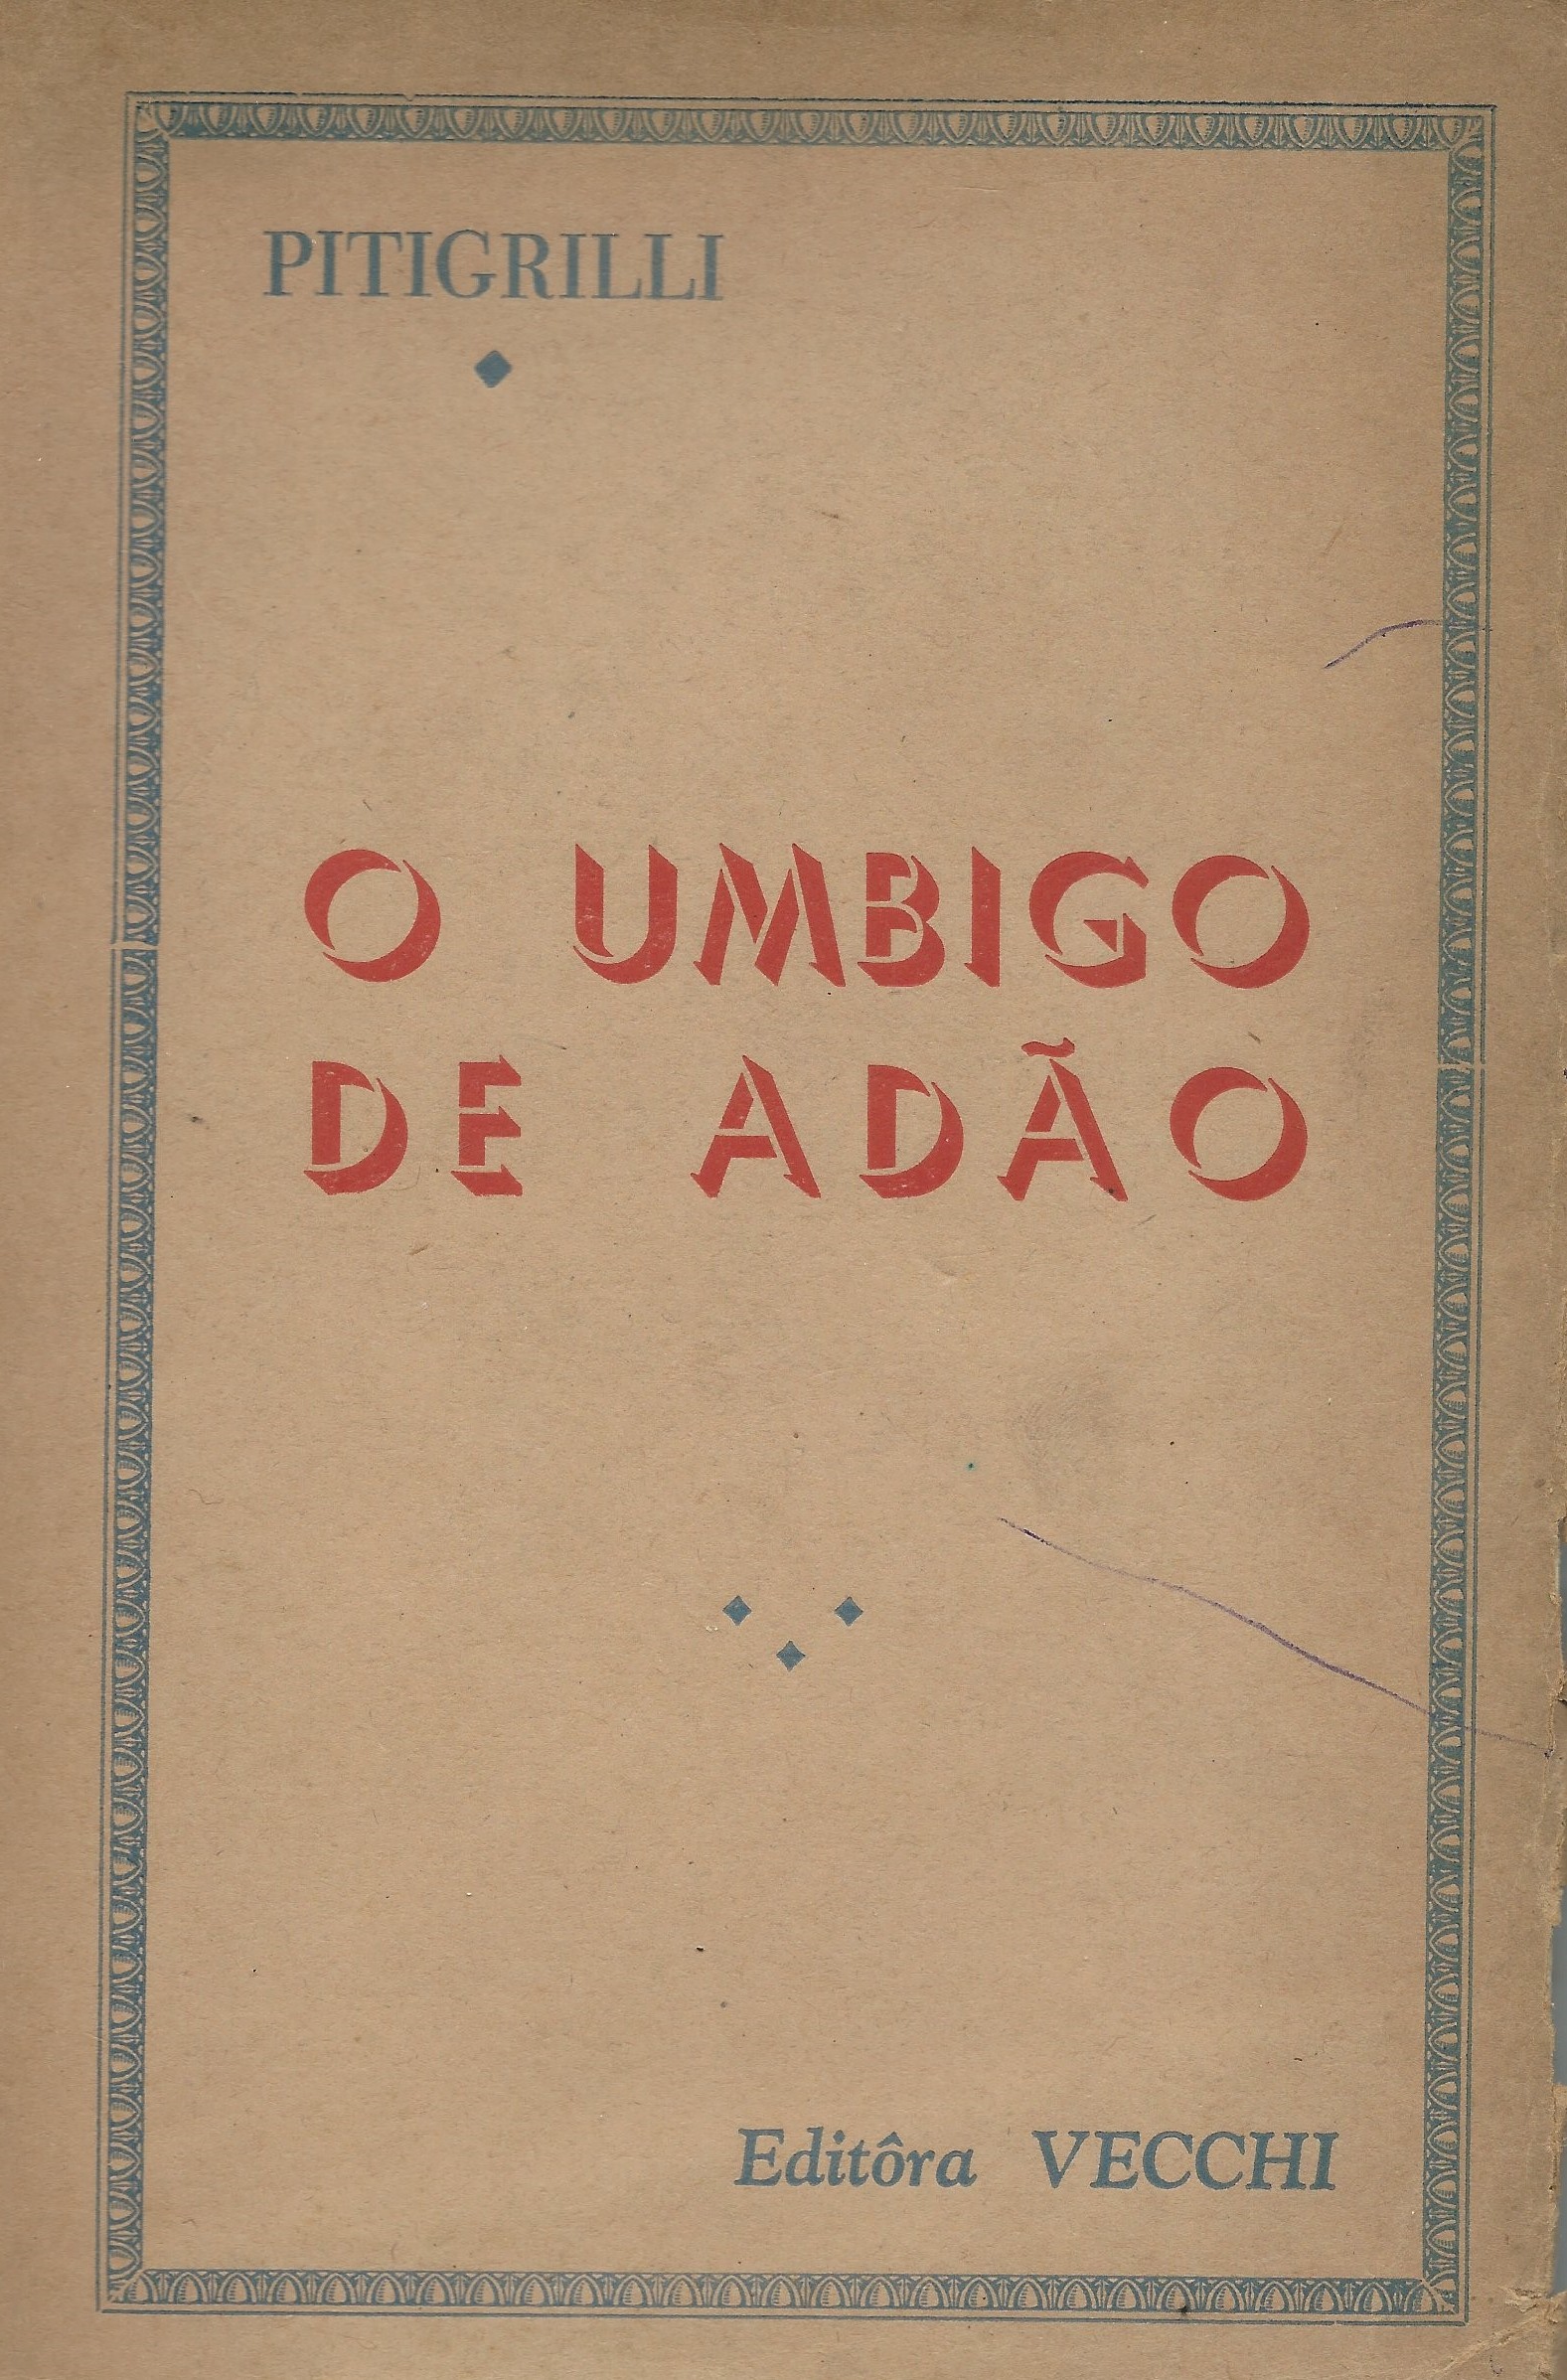 https://www.literaturabrasileira.ufsc.br/_images/obras/o_umbigo_de_adao.jpg